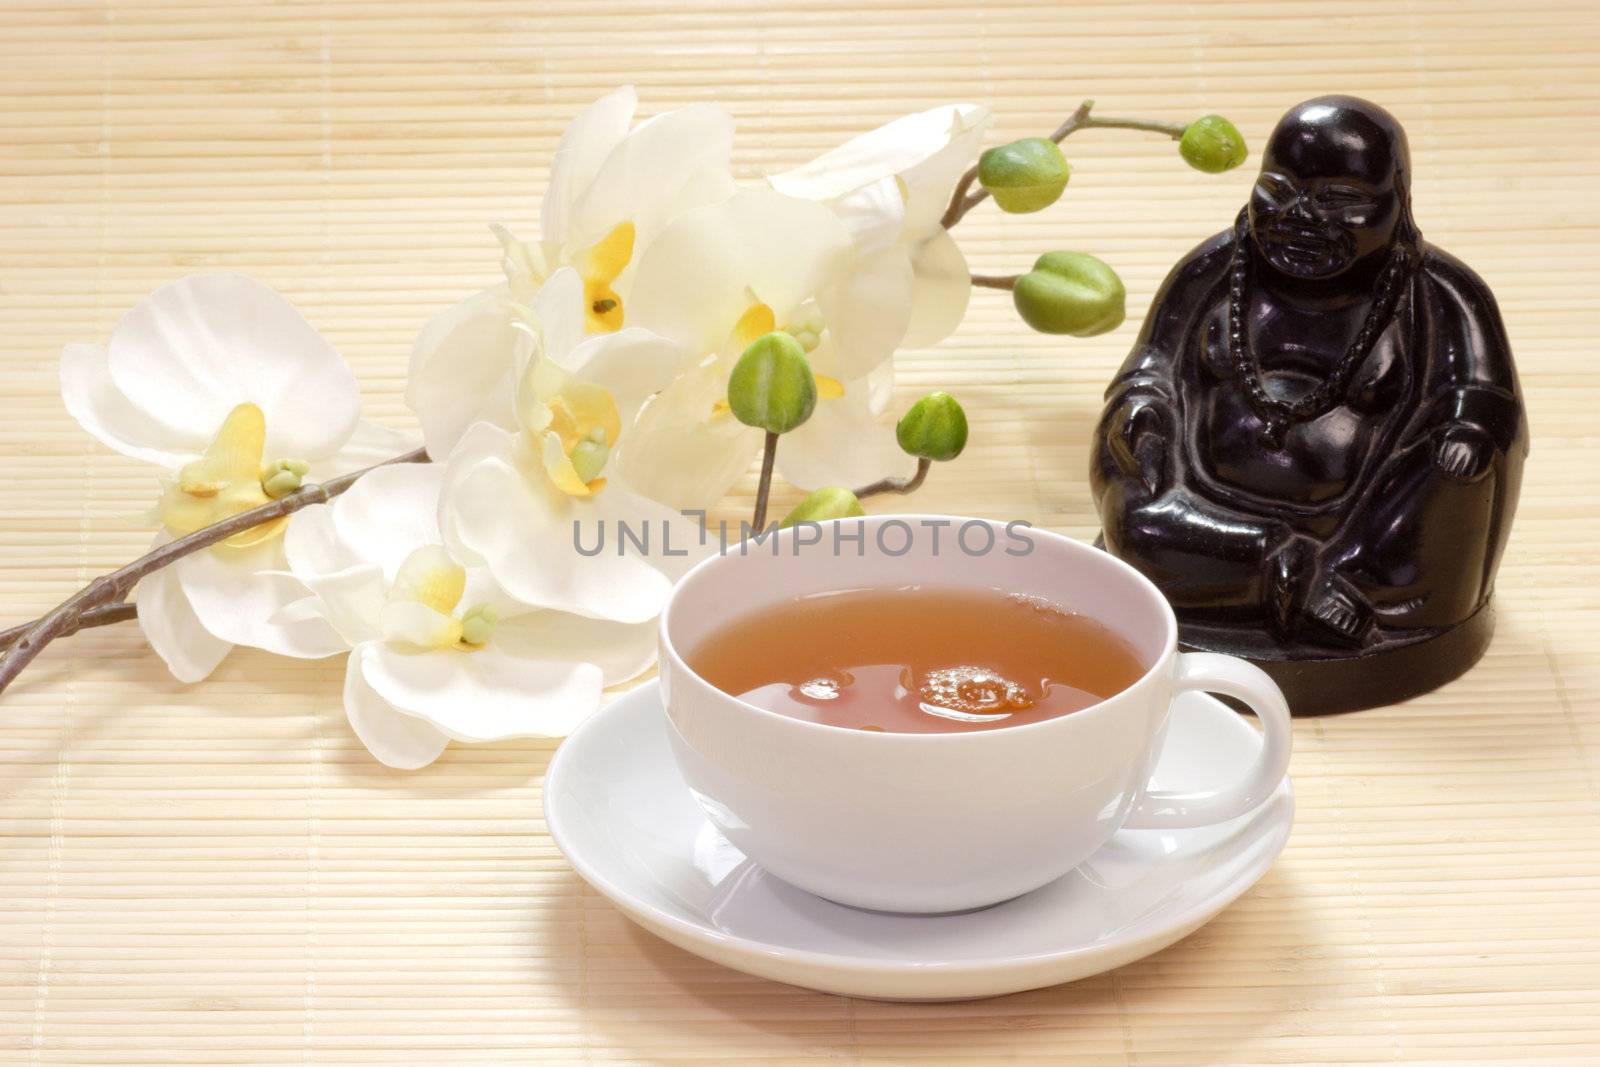 Gr�ner Tee in einer Tasse mit Buddhafigur und wei�en Bl�ten als Dekoration